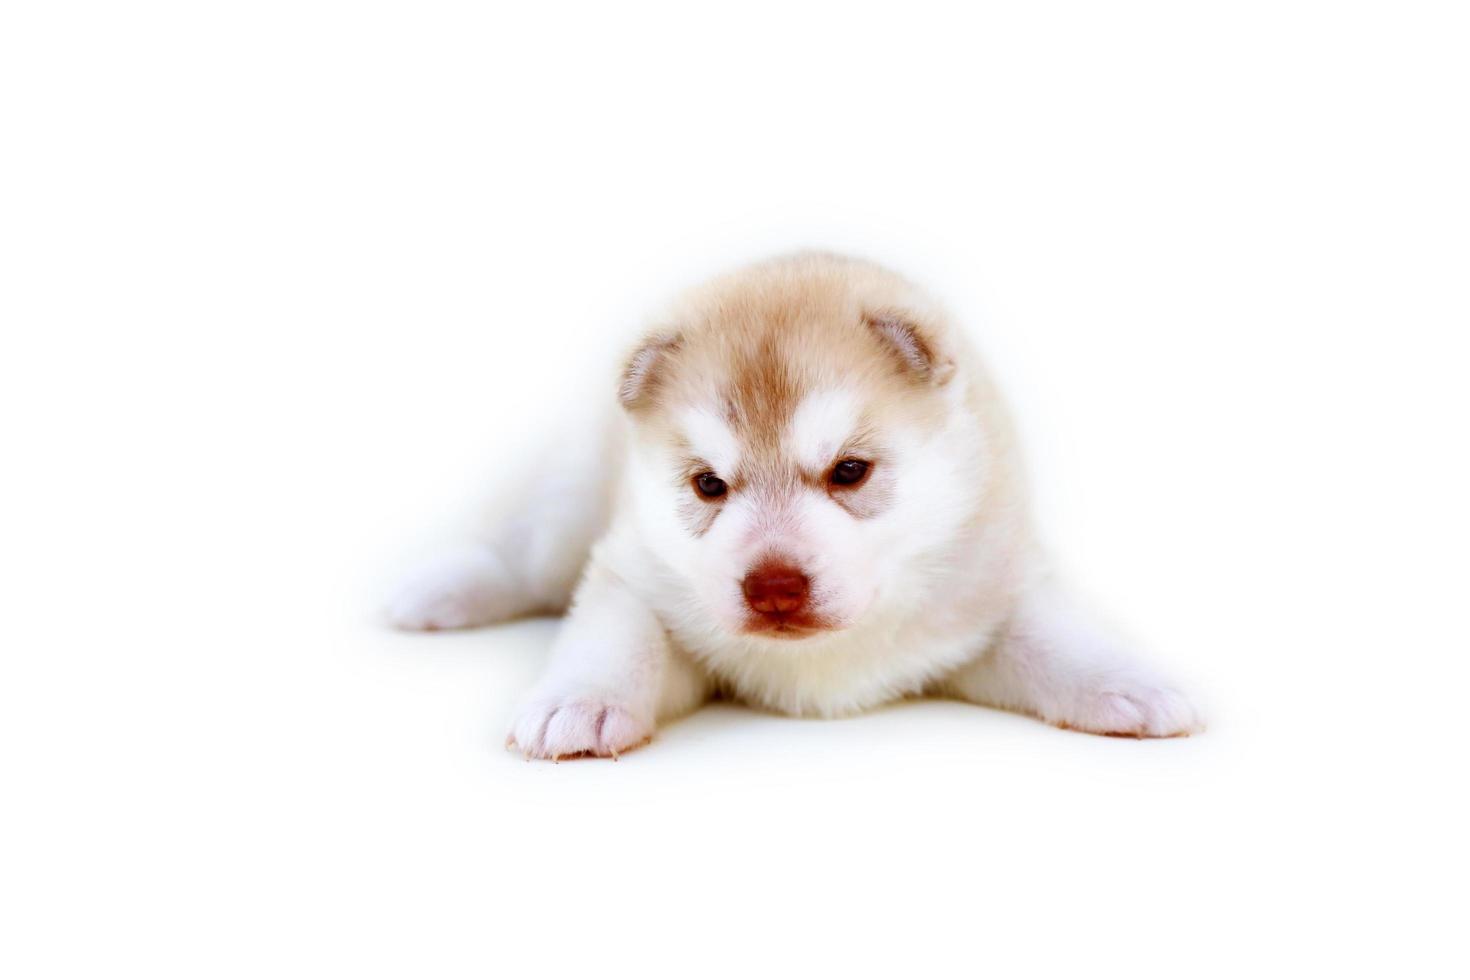 pasgeboren Siberische husky pup licht rode en witte kleuren liggend op een witte achtergrond. pasgeboren pluizig puppy geïsoleerd op een witte achtergrond. foto